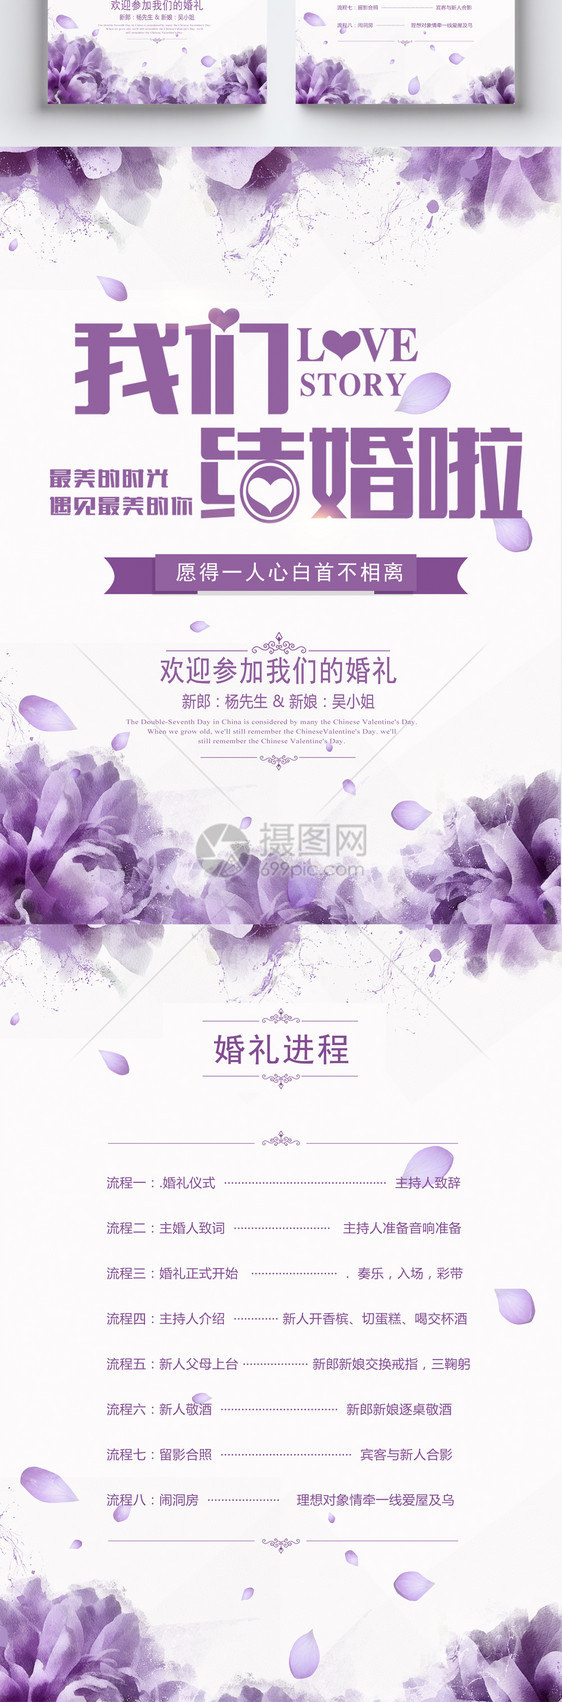 浪漫紫色婚礼节目单图片